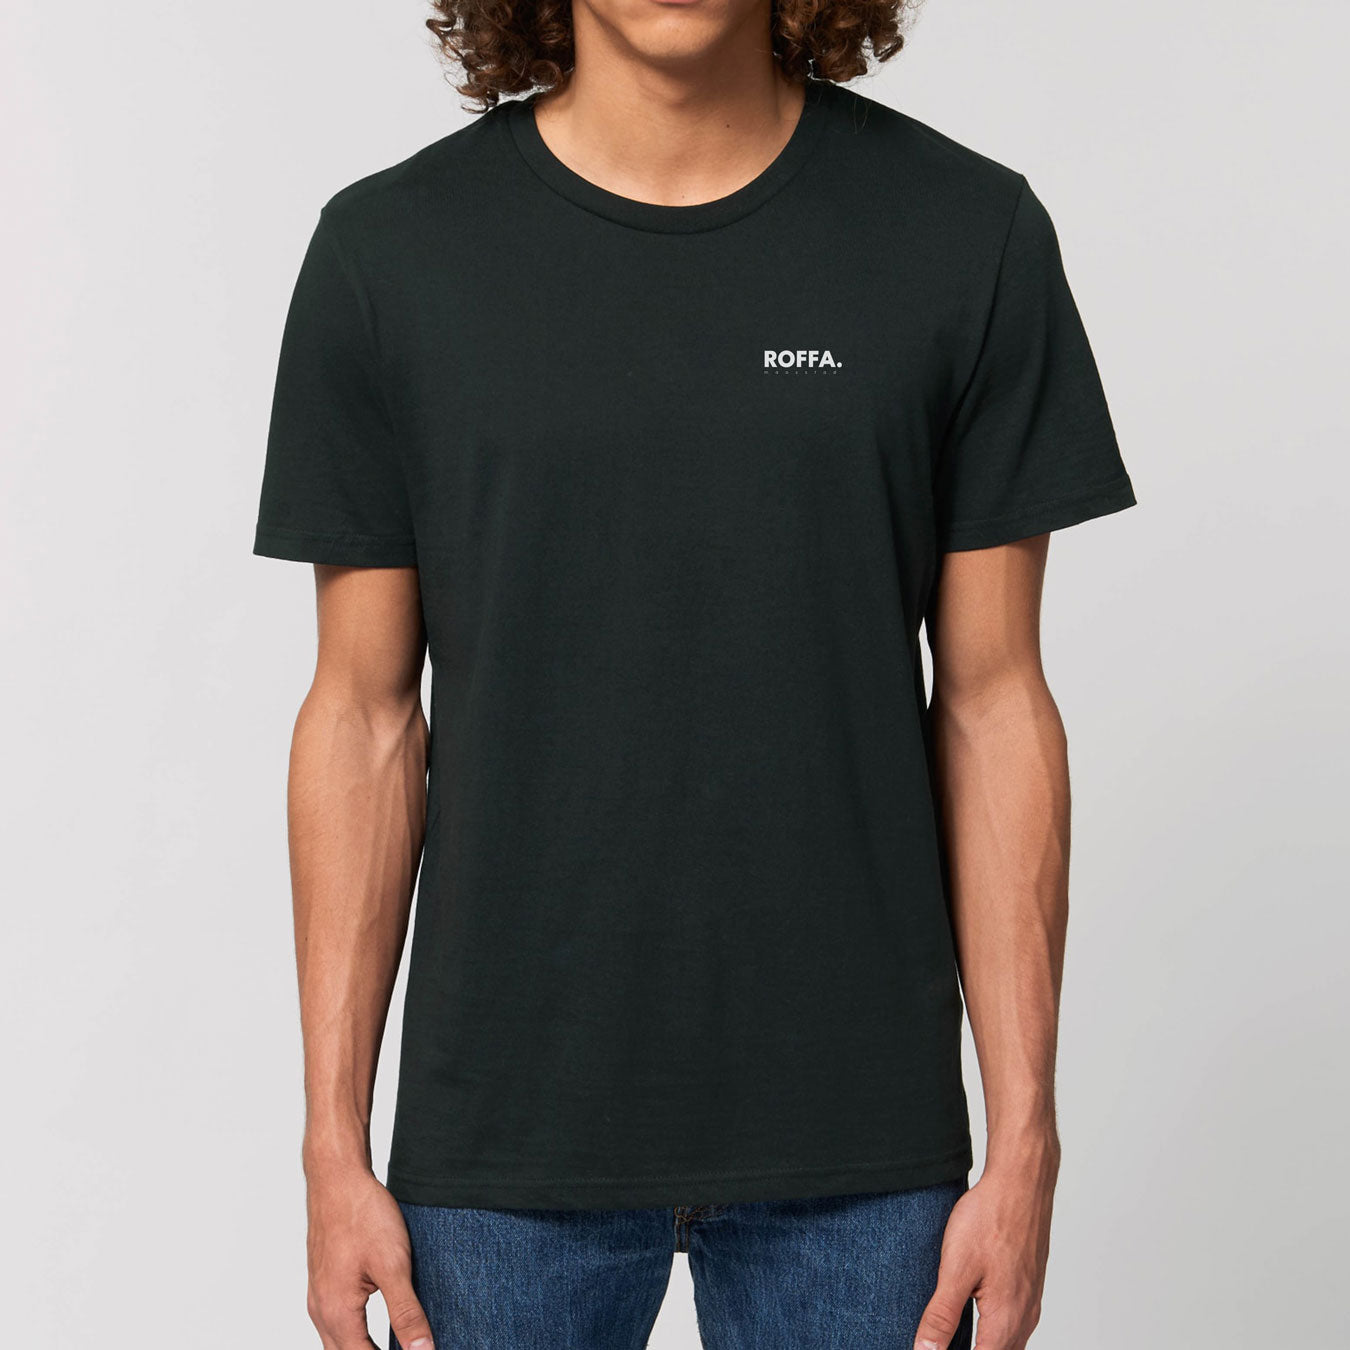 Zwart t-shirt met Roffa en rotterdam logo